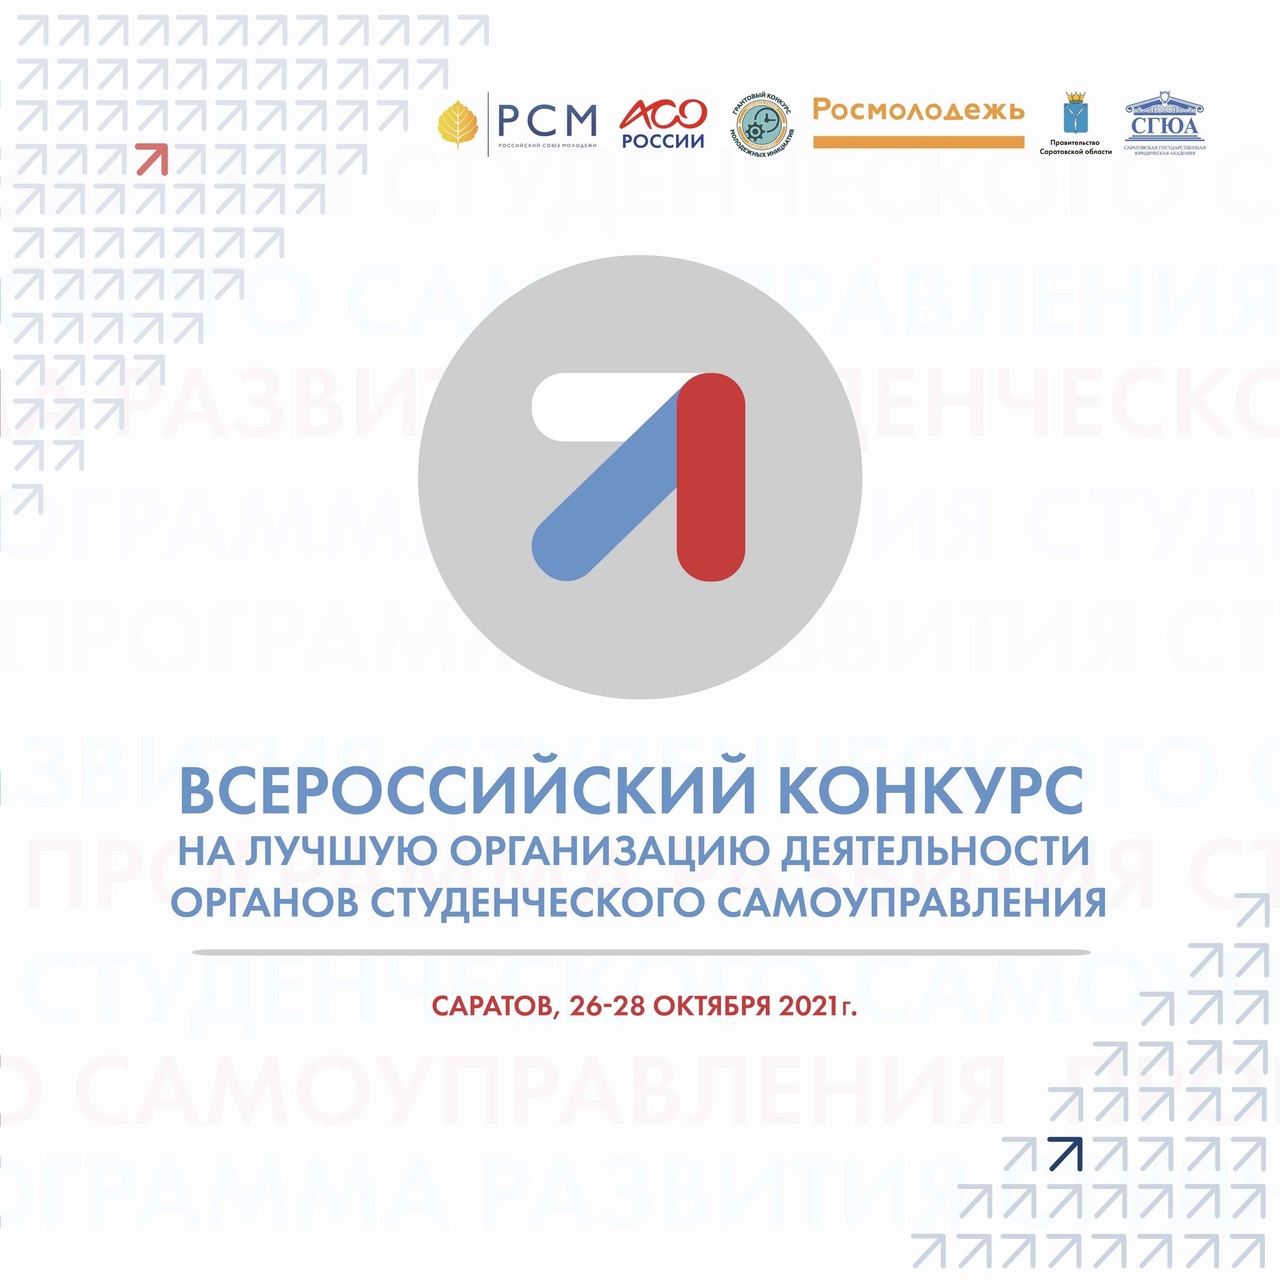 Всероссийский конкурс ОССУ: старт приёма заявок